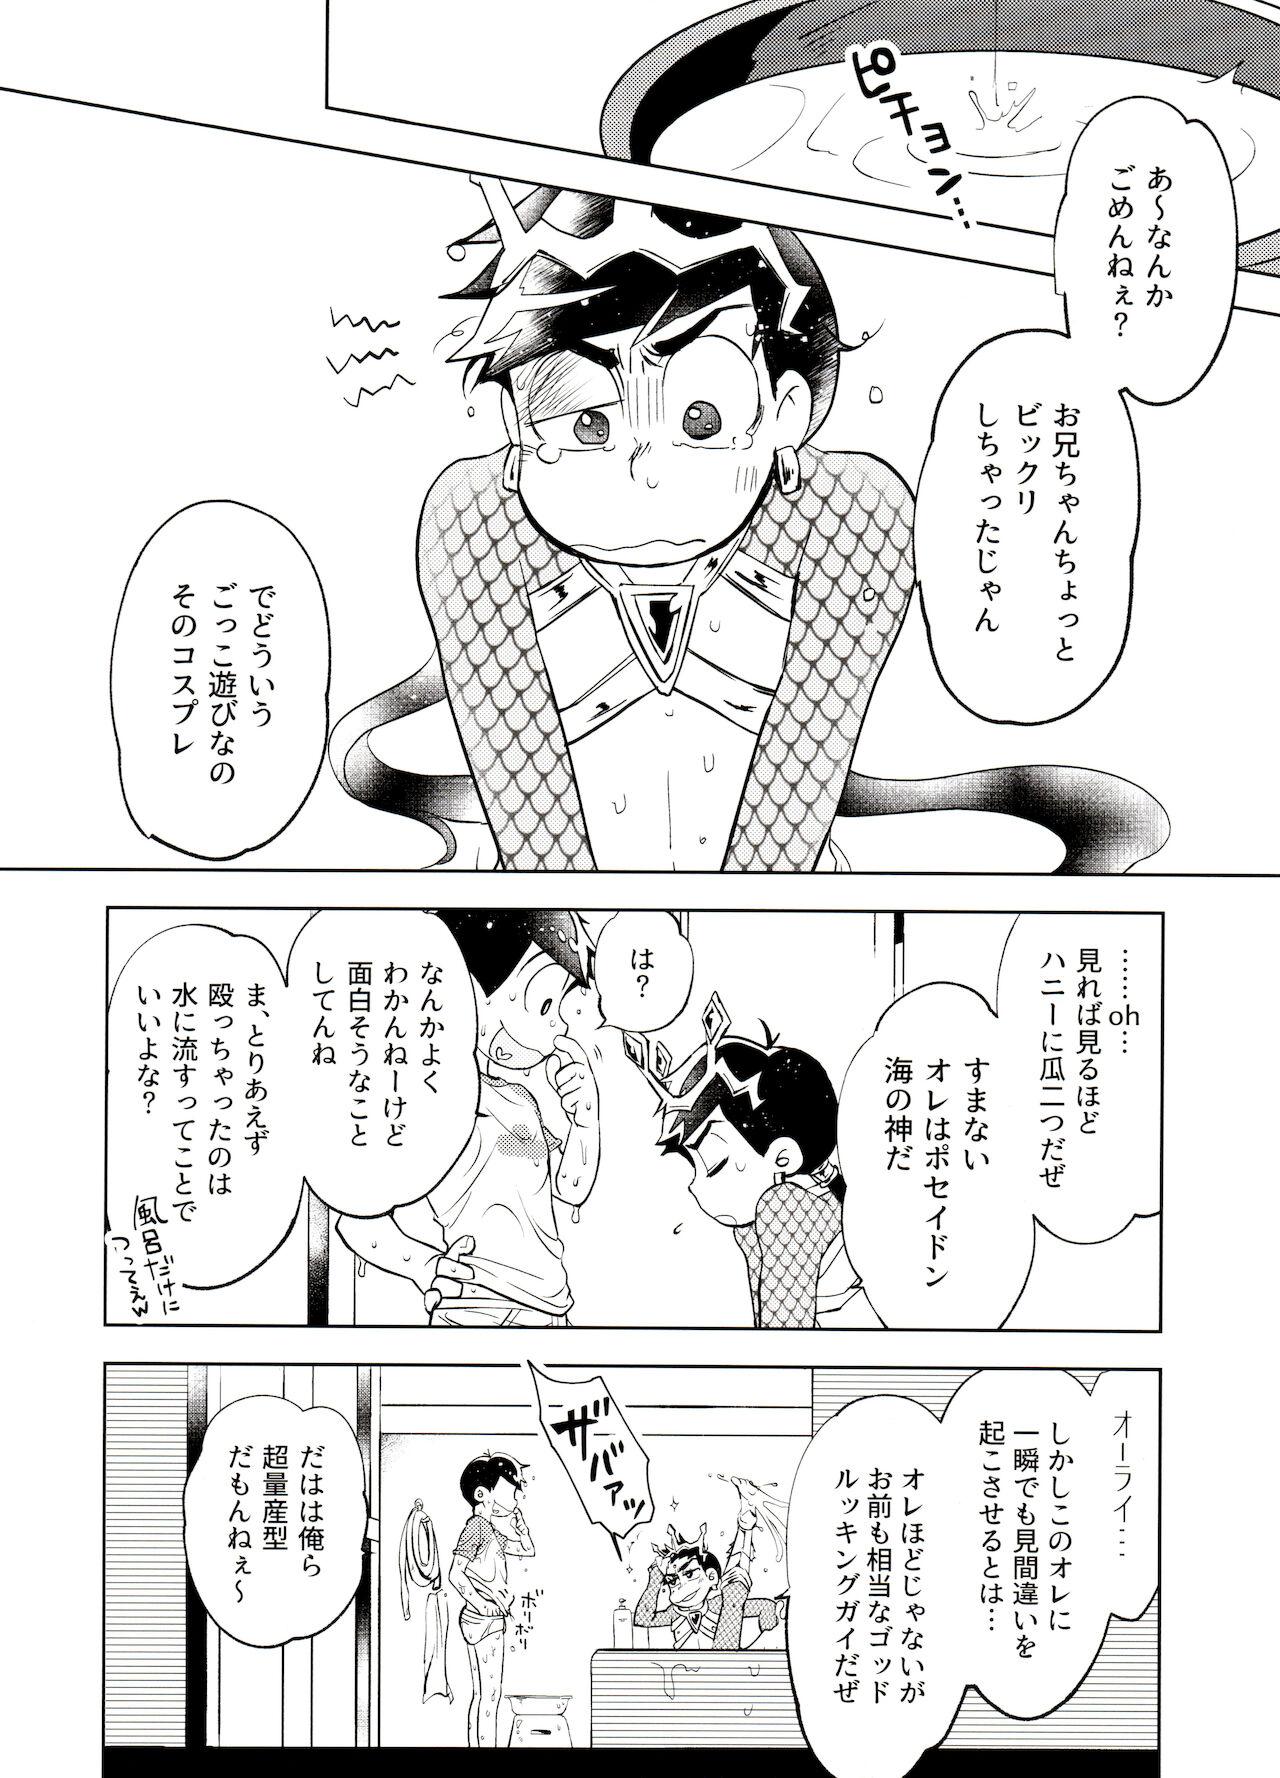 Vecina Honjitsu wa Tokoro ni Yori Kaminari o Tomonatta Kami to Narudeshou. - Osomatsu san Footfetish - Page 7